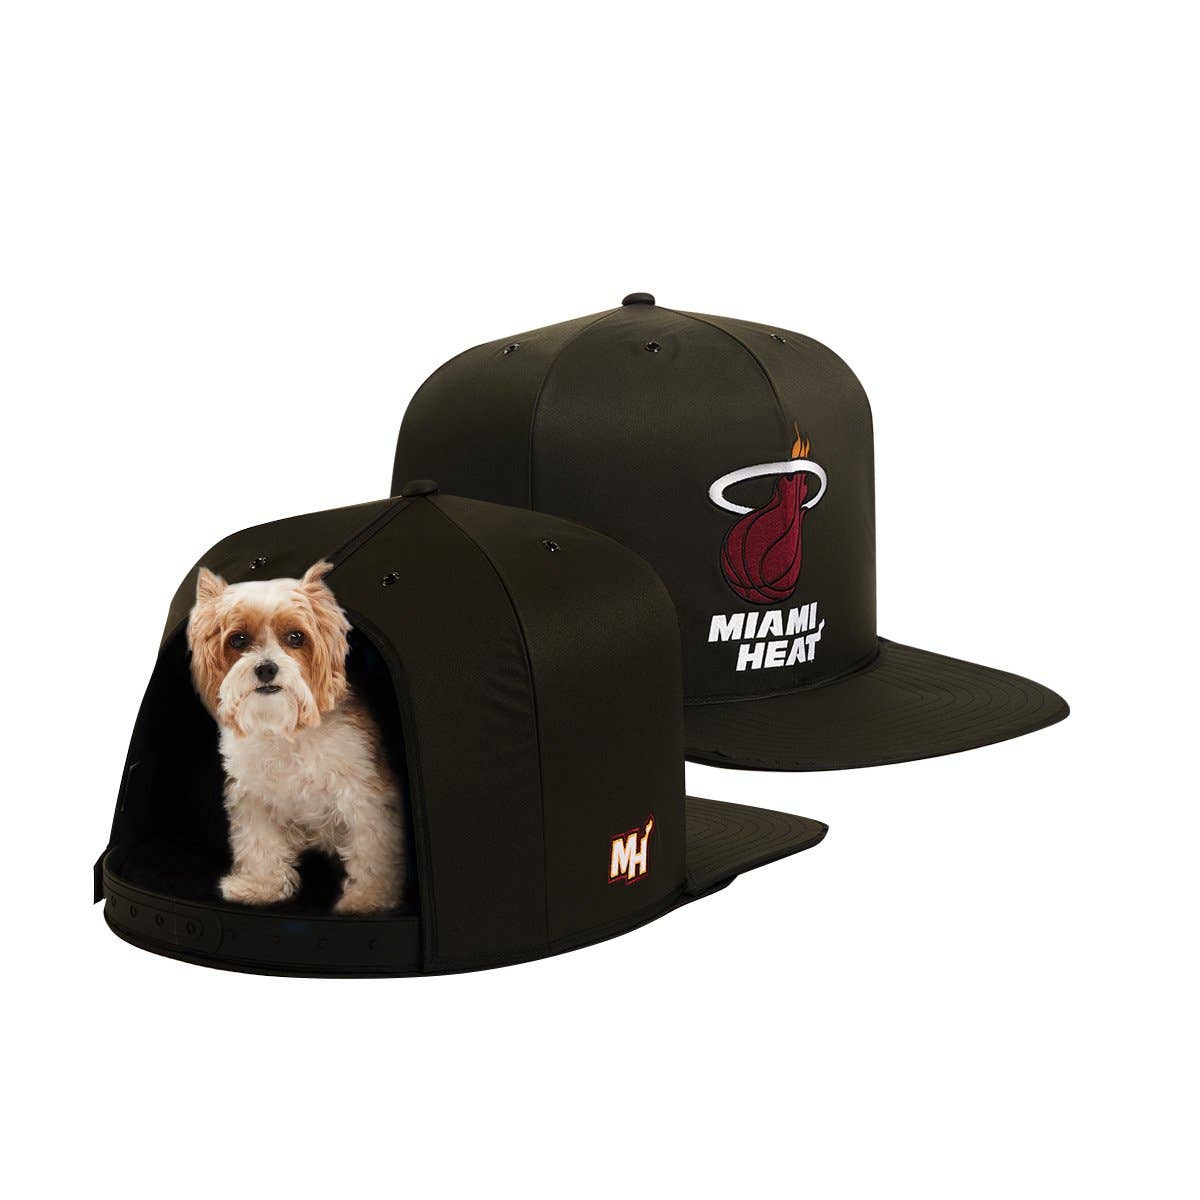 Miami Heat Nap Cap Premium Dog Bed  Image